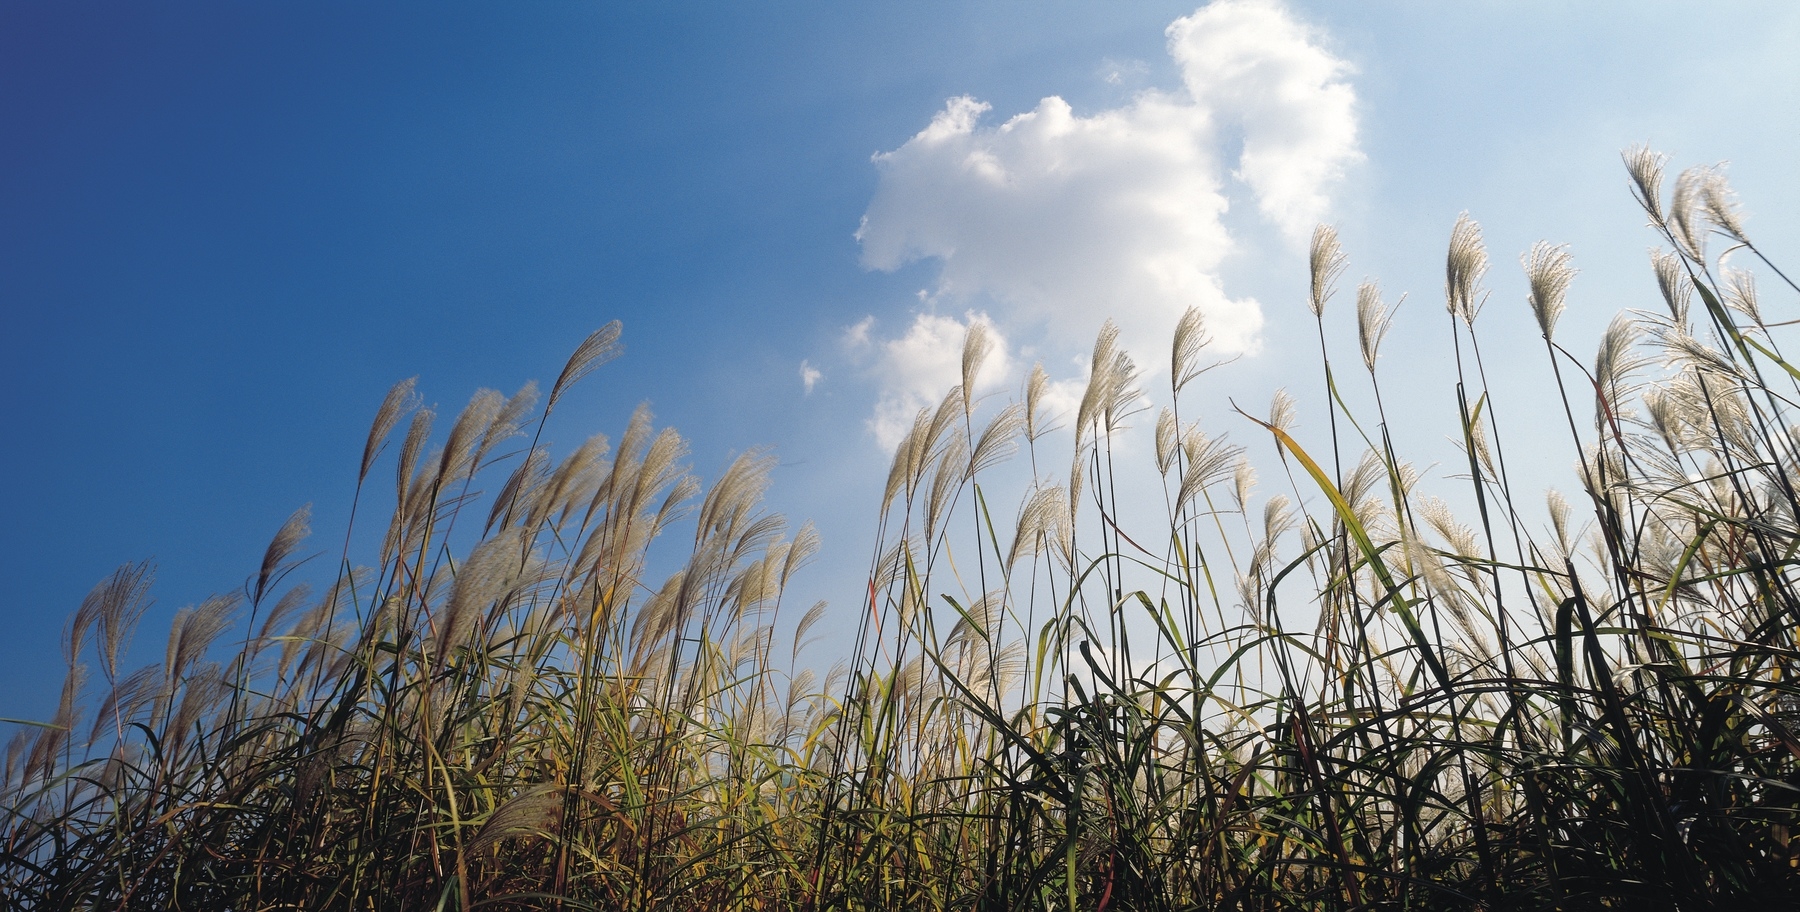 Wheat fields in a blue sky